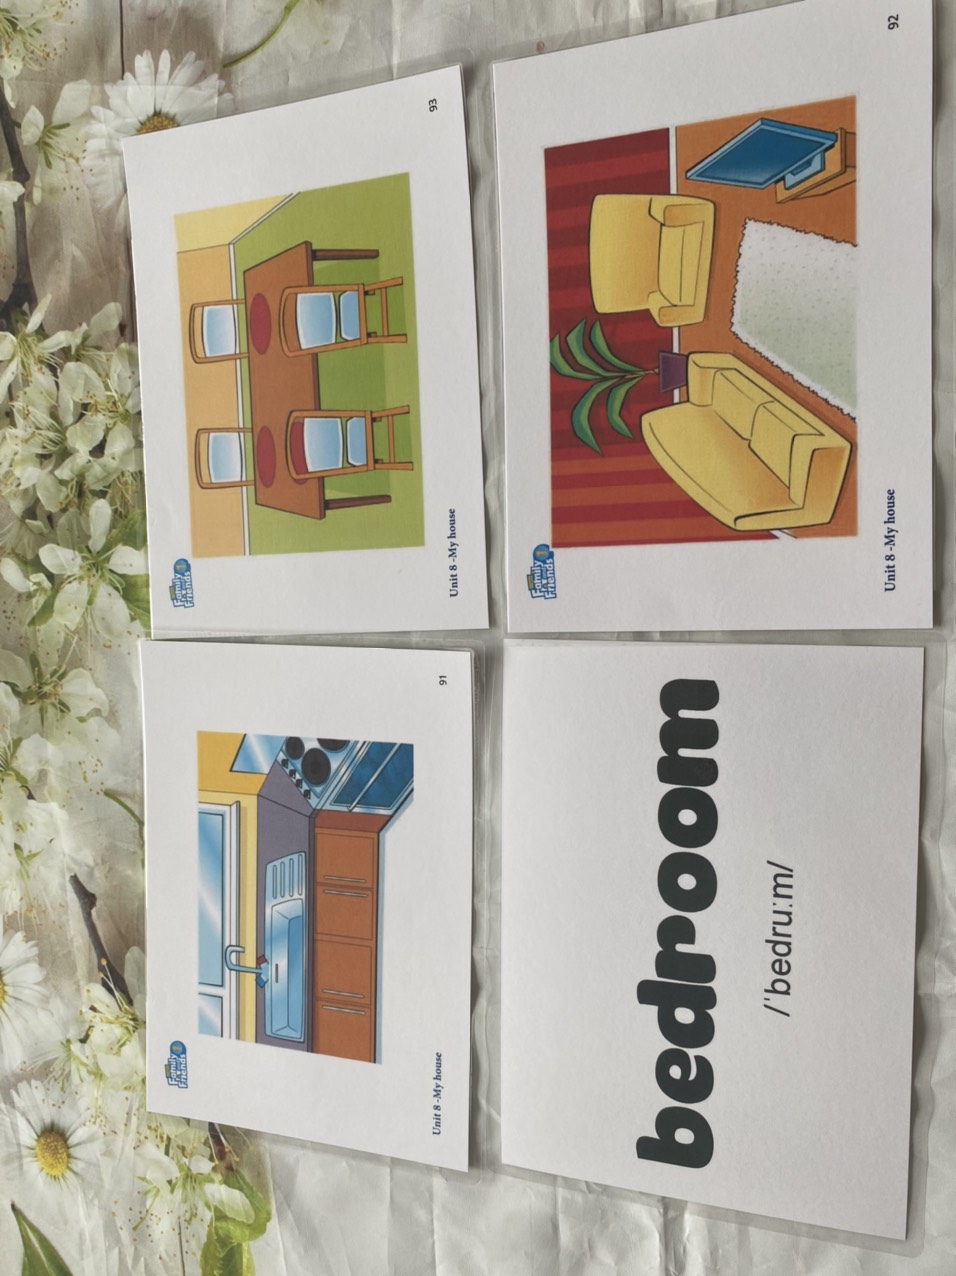 Flashcard Tiếng Anh dành cho giáo trình Family and Friends 1 phiên bản 2 ( Kích thước A5- thiết kế 2 mặt - ép plastics bền đẹp )